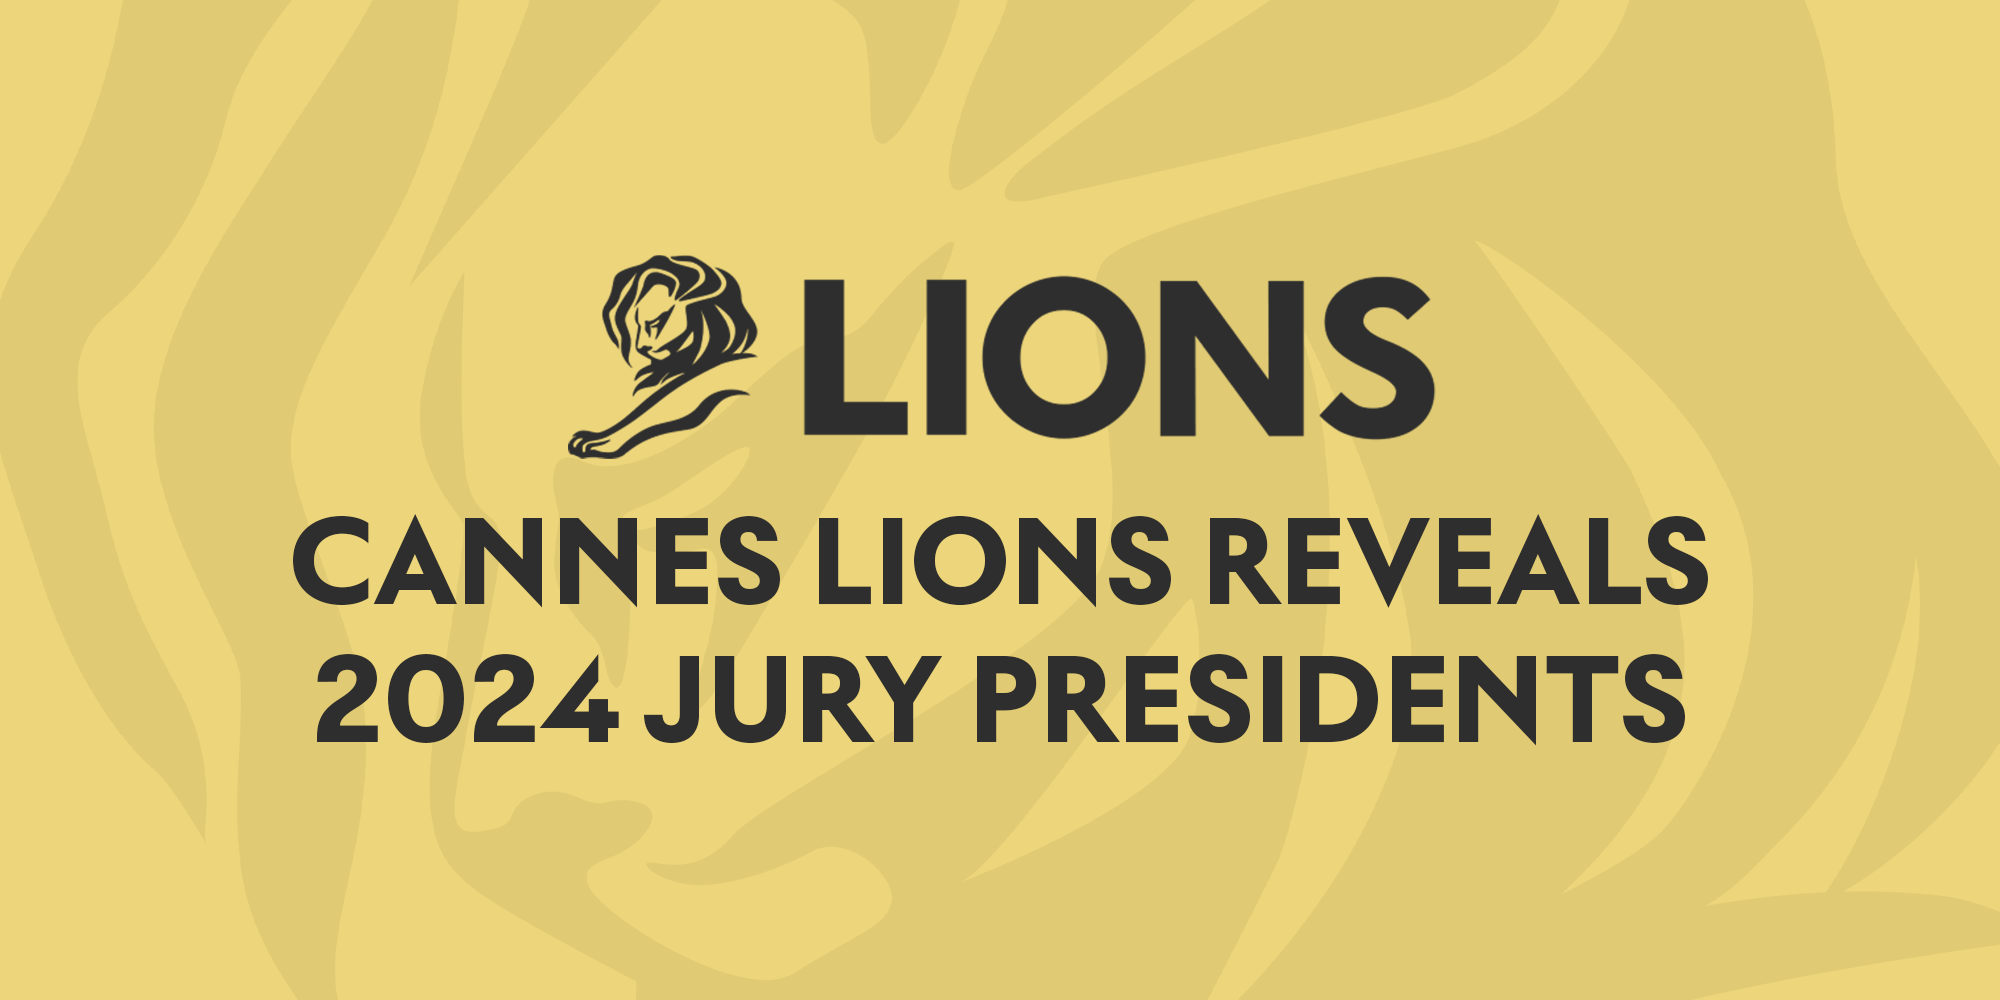 Cannes Lions Announces its 2024 Jury President Lineup Announces its